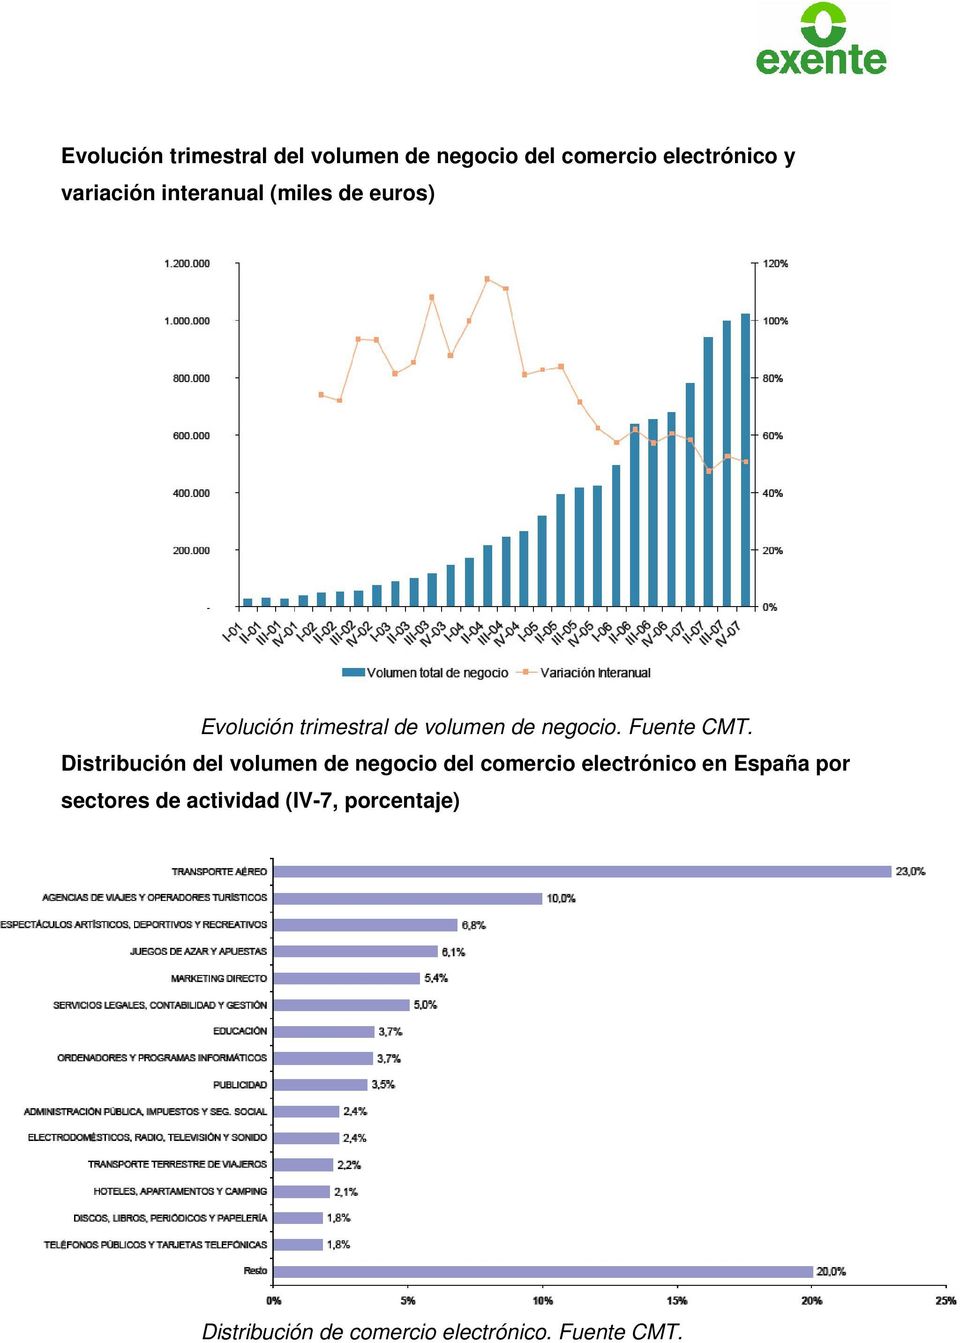 Distribución del volumen de negocio del comercio electrónico en España por